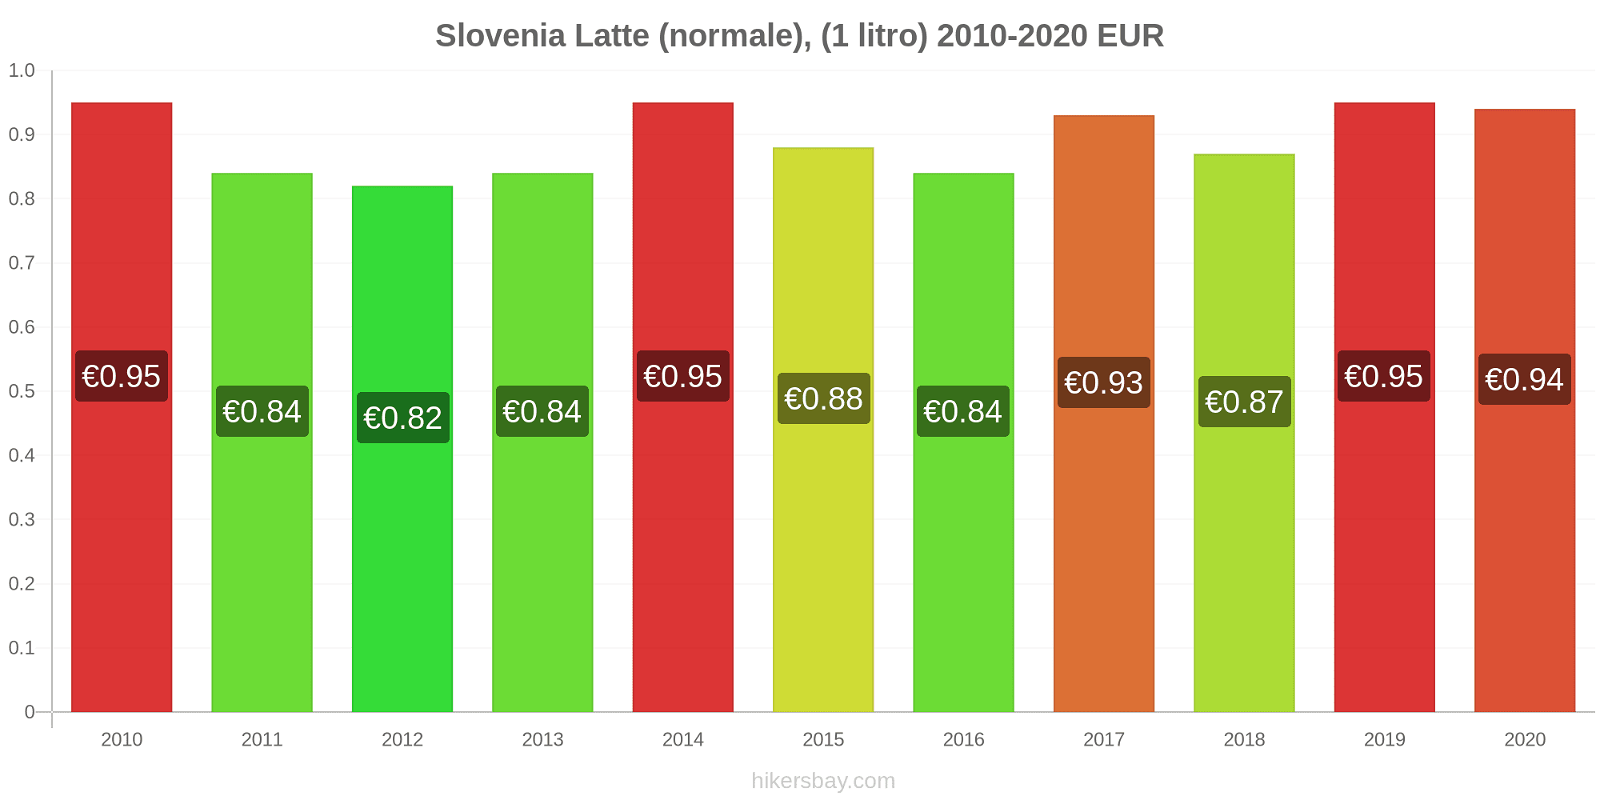 Slovenia variazioni di prezzo Latte (1 litro) hikersbay.com